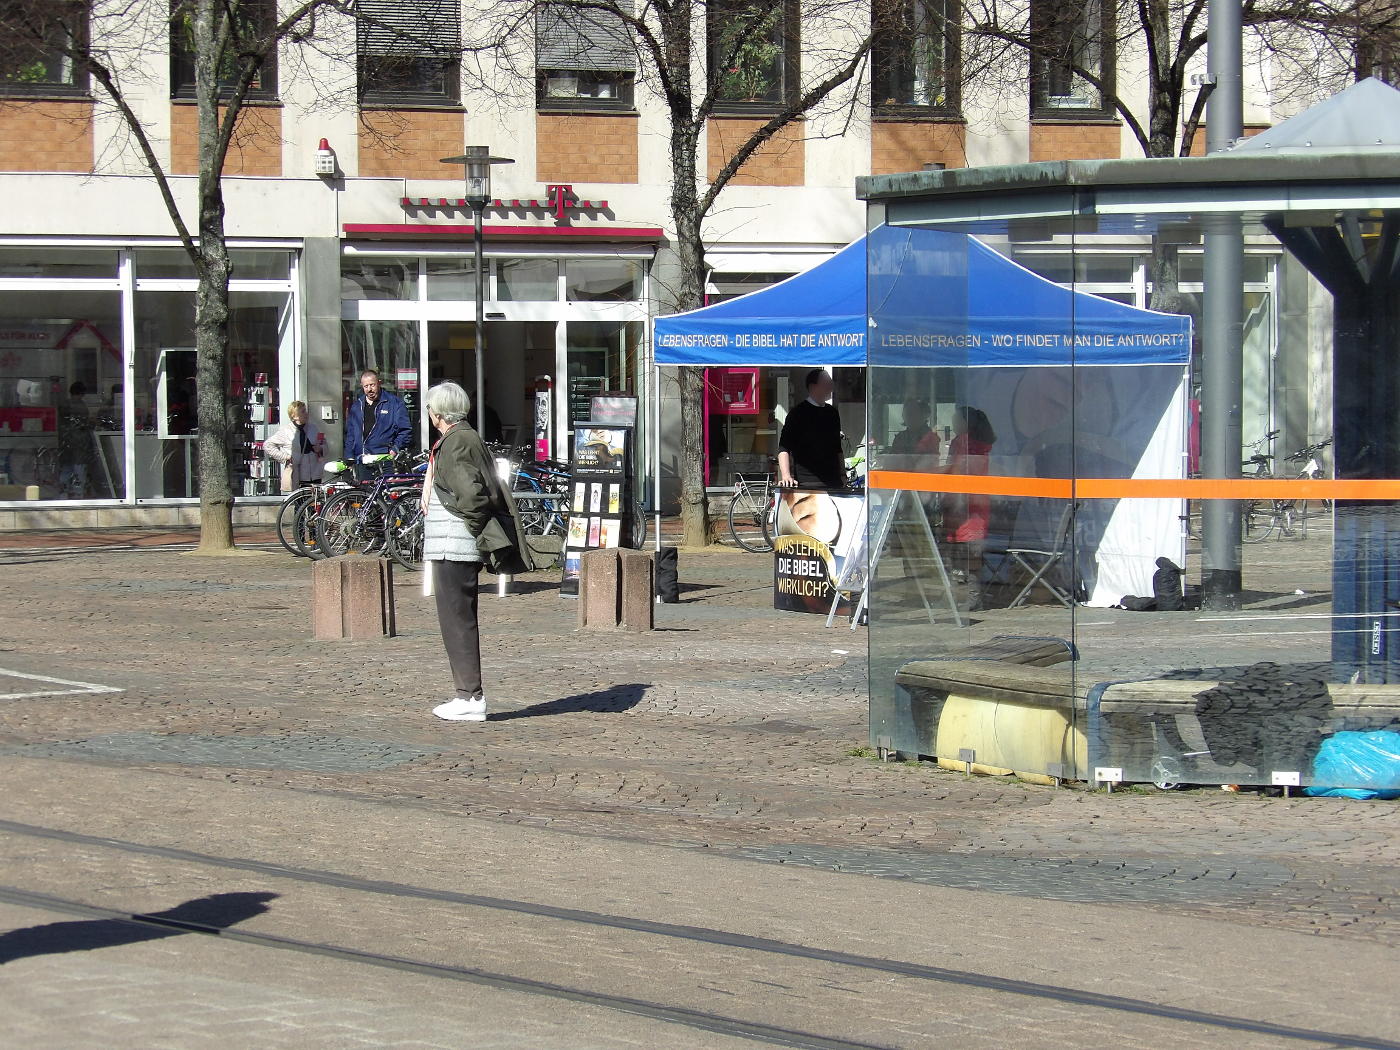 Darmstadt, die Stadt der Bevölkerungsvermischung – Jehovas Zeugen arbeiten international mit daran